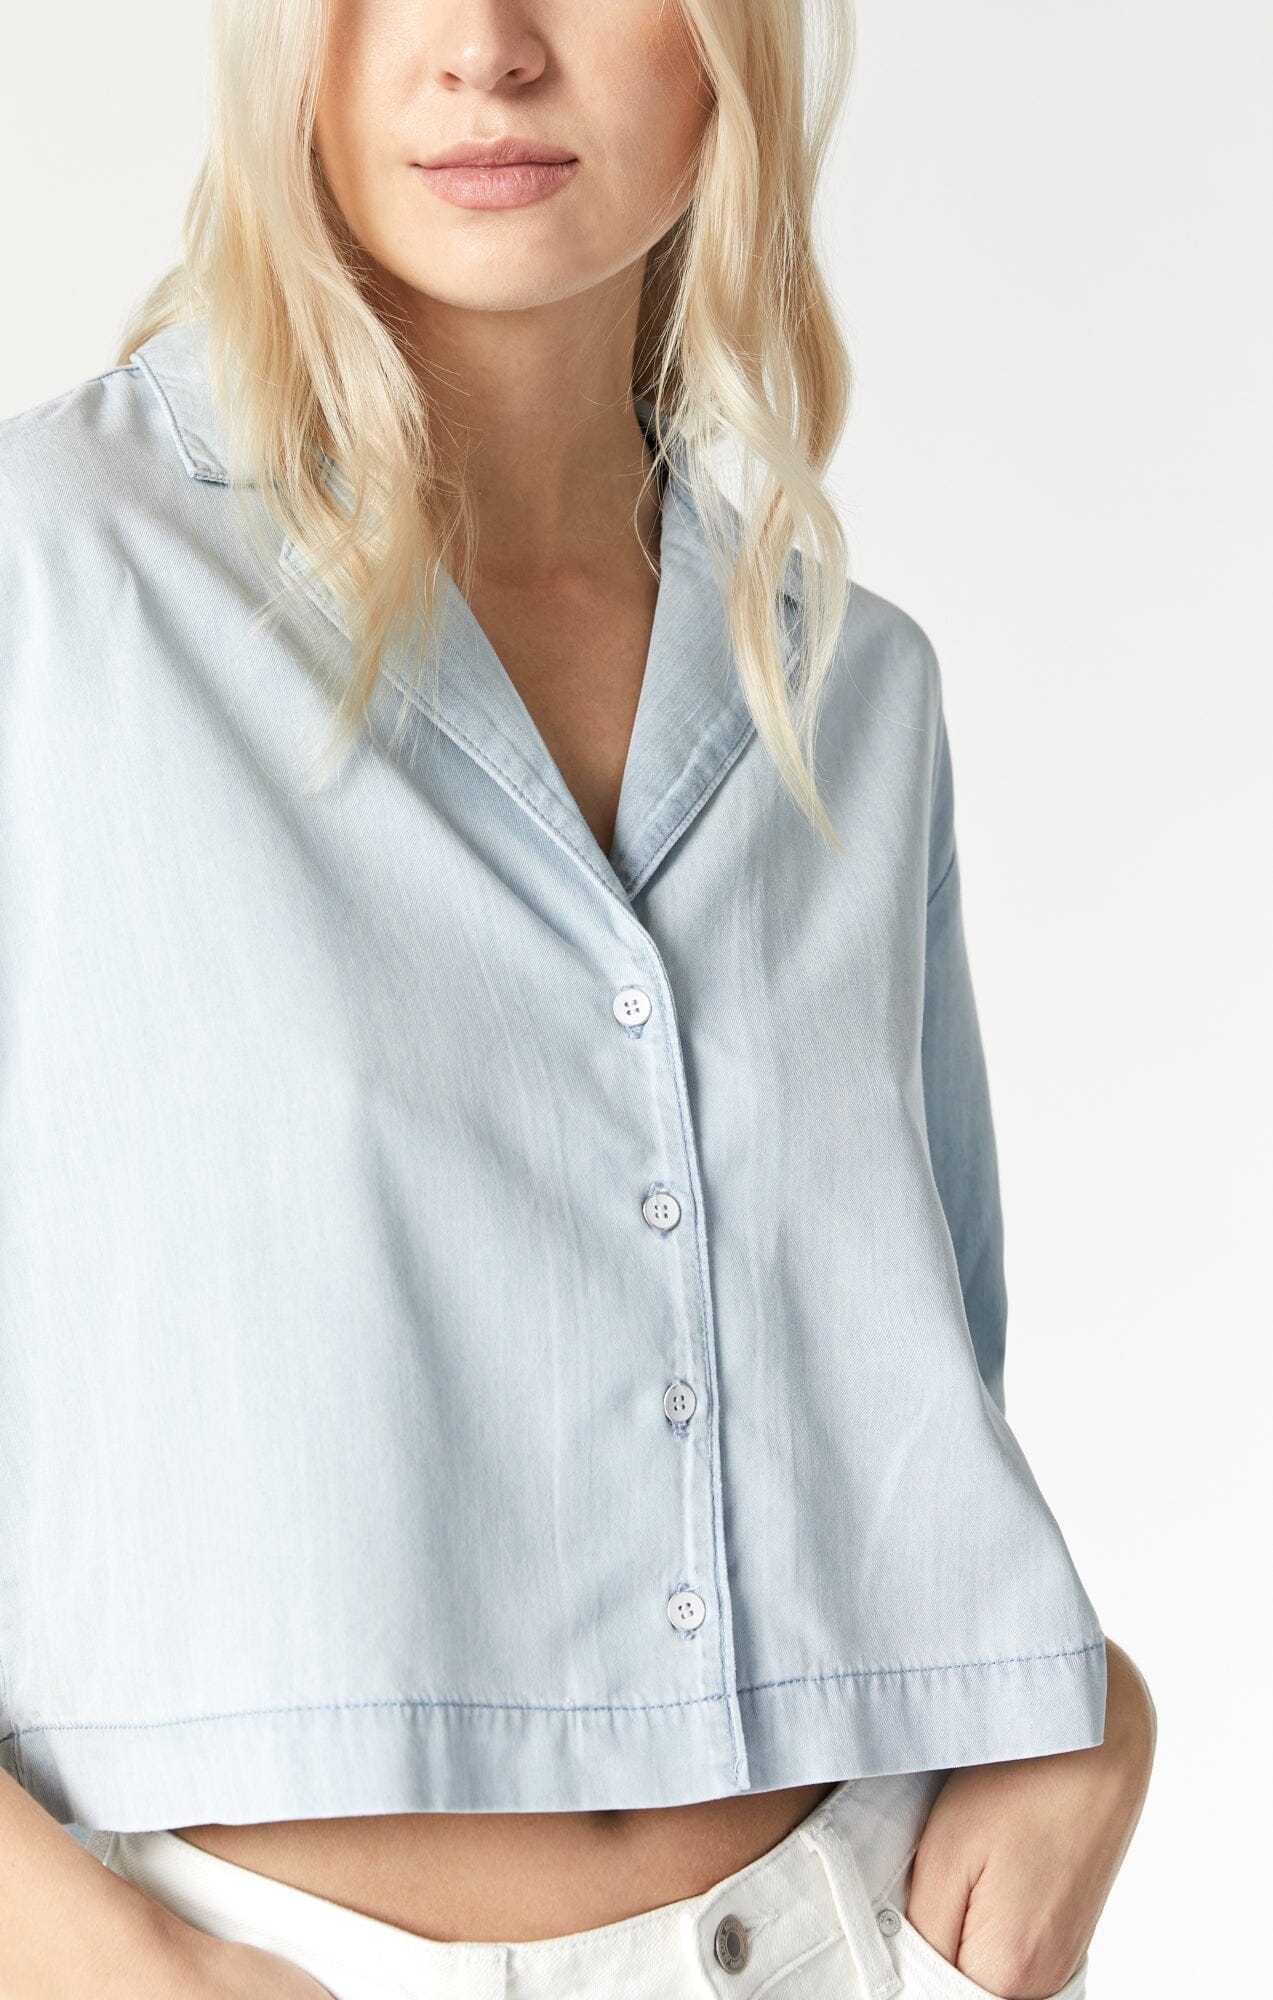 Cropped Short Sleeve Shirt for Women - Light Denim